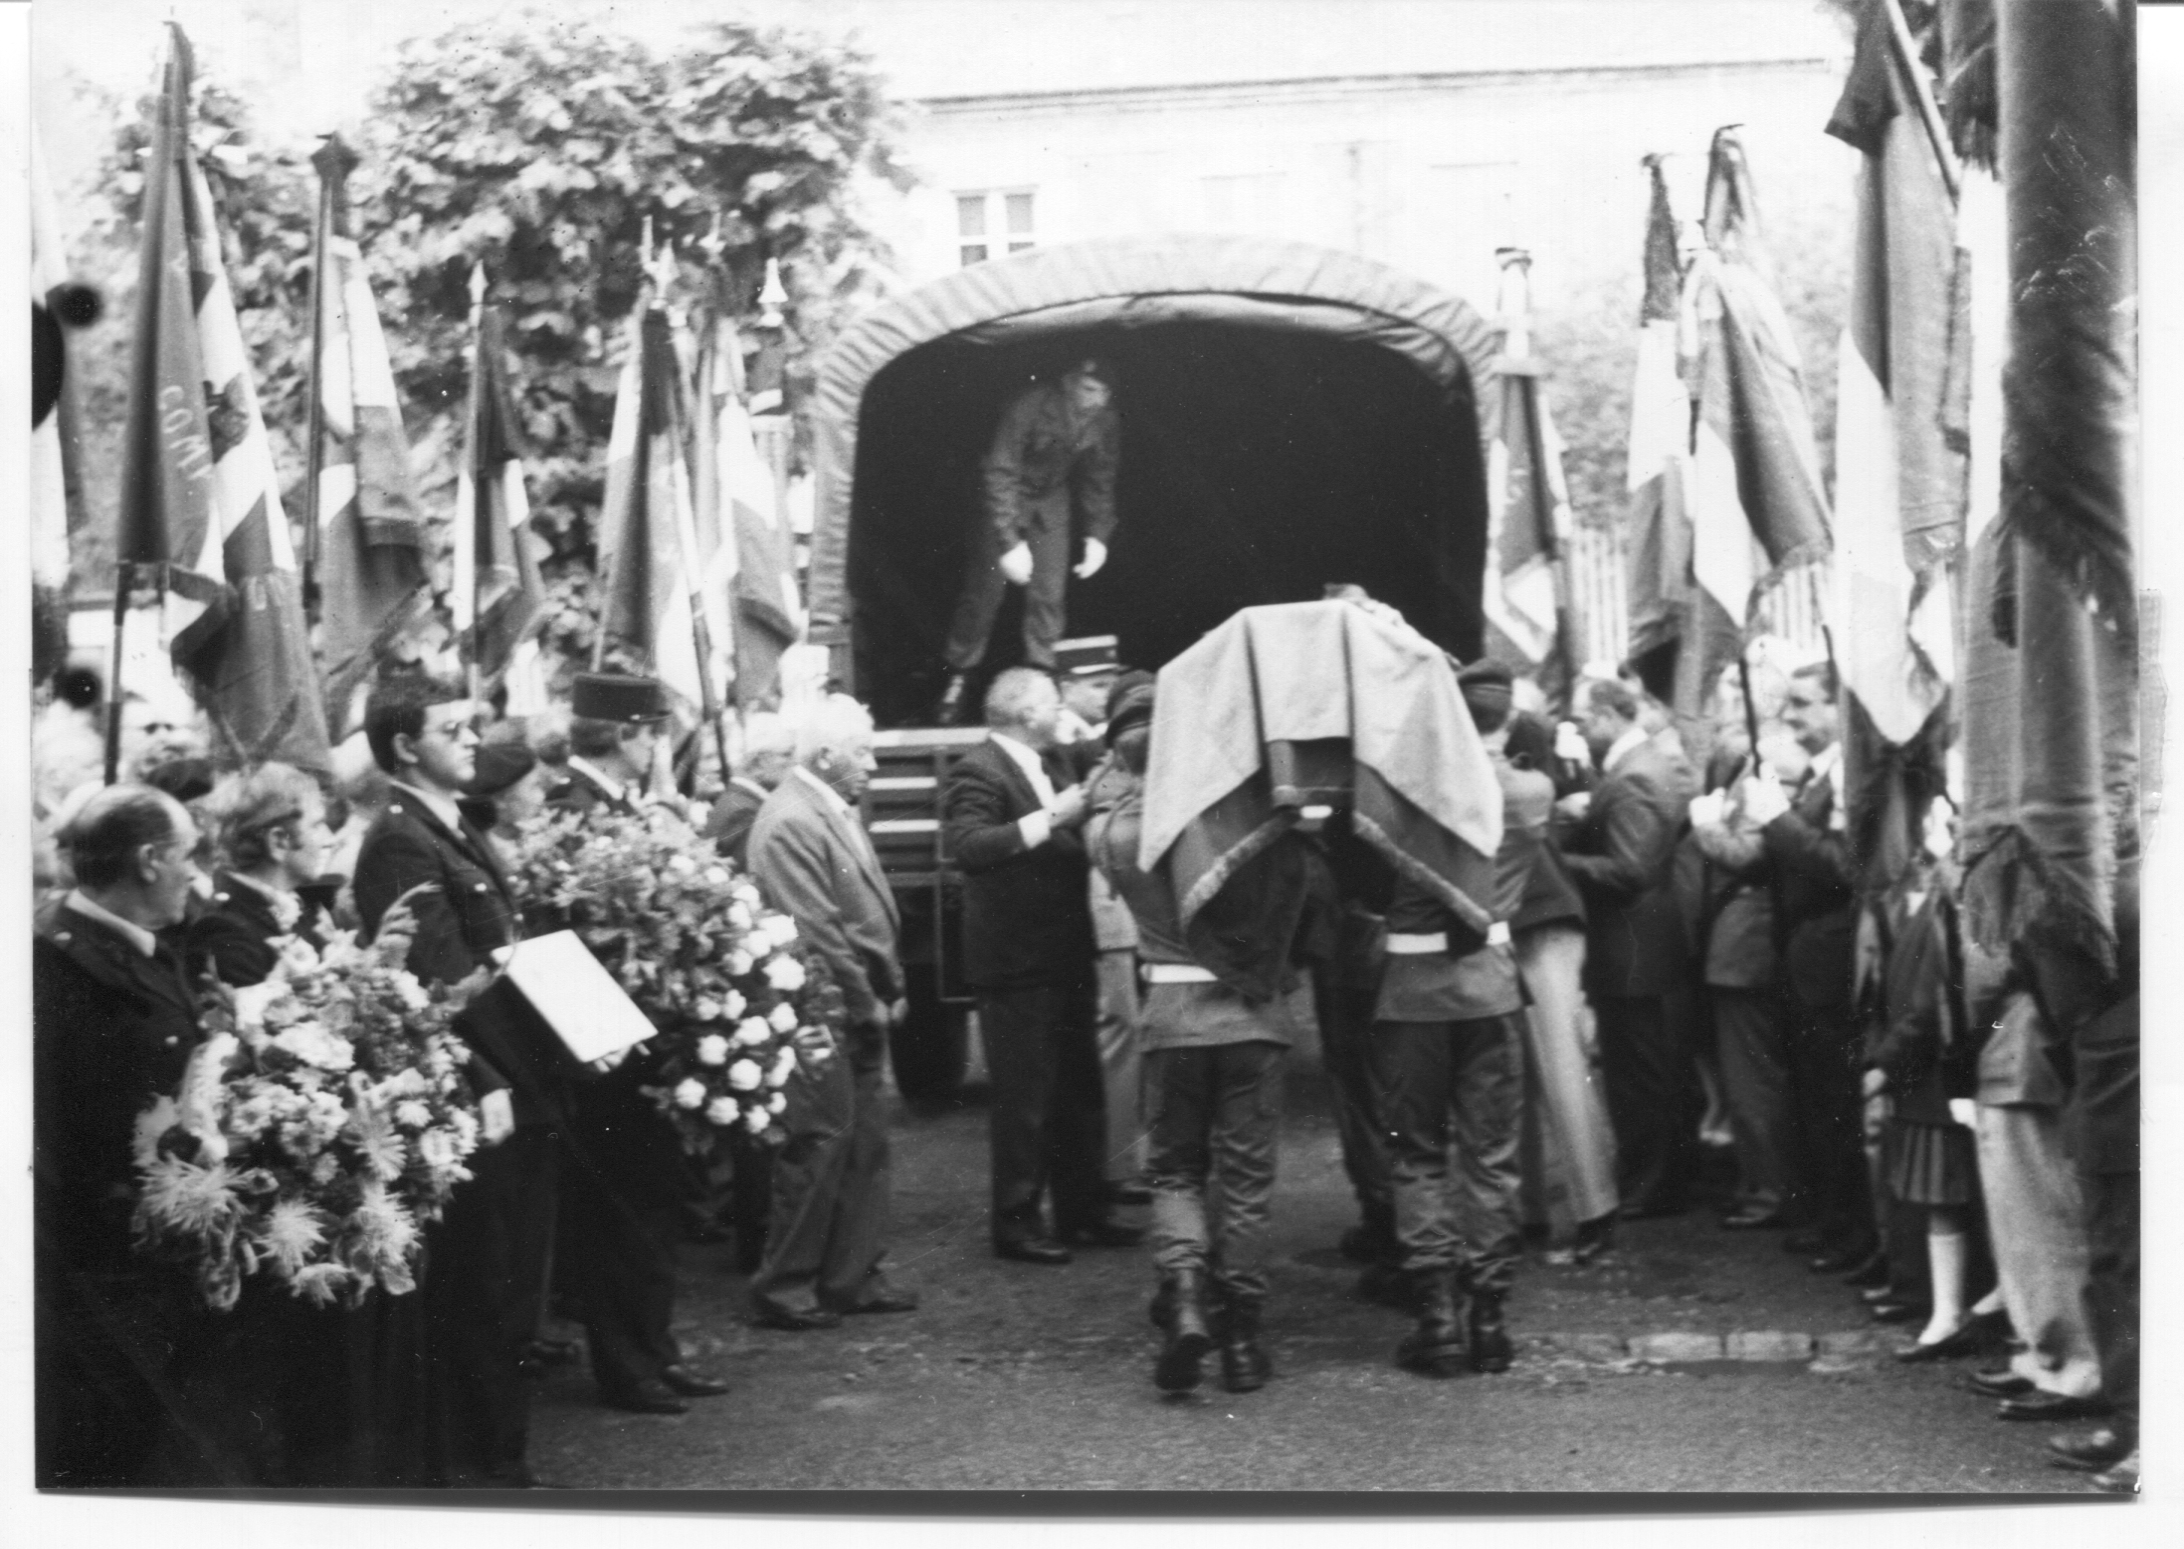 Le Pévédic François Obsèques à Crisolles 27 juin 1985